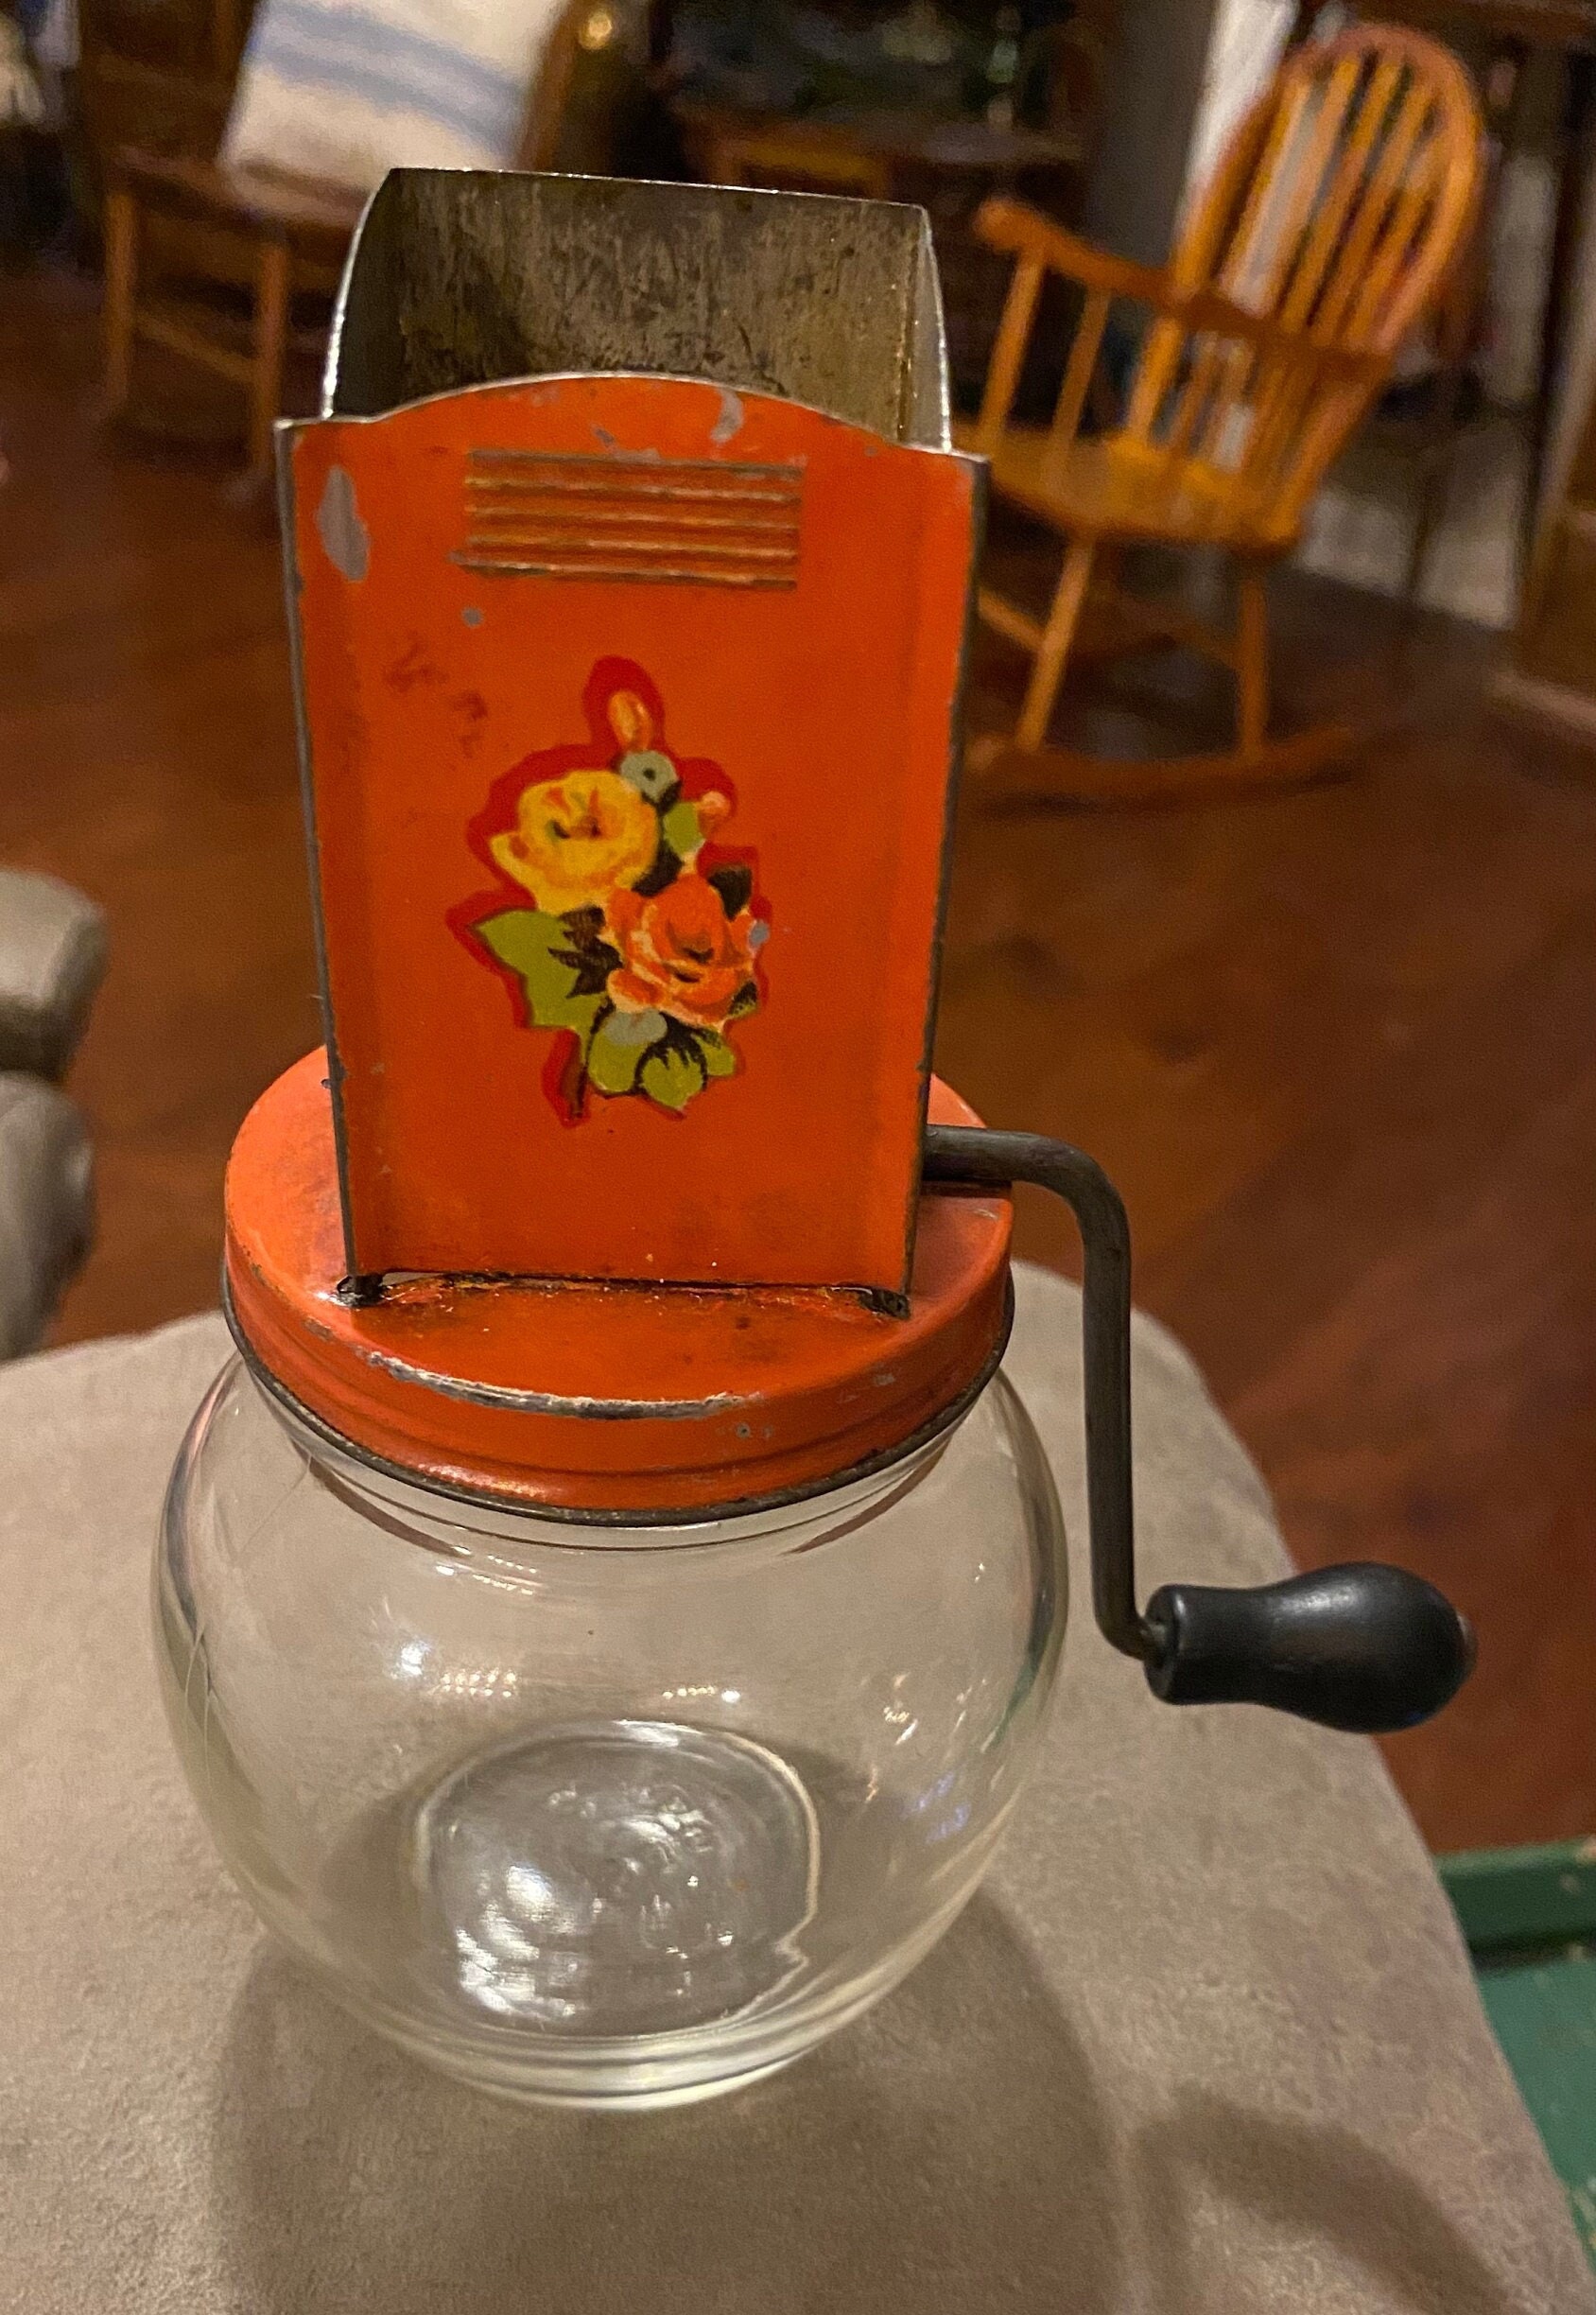 Vintage Androck Nut Grinder/ Glass Jar Nut Chopper With a Crank/  Kitchenware/ Vintage Home Decor 